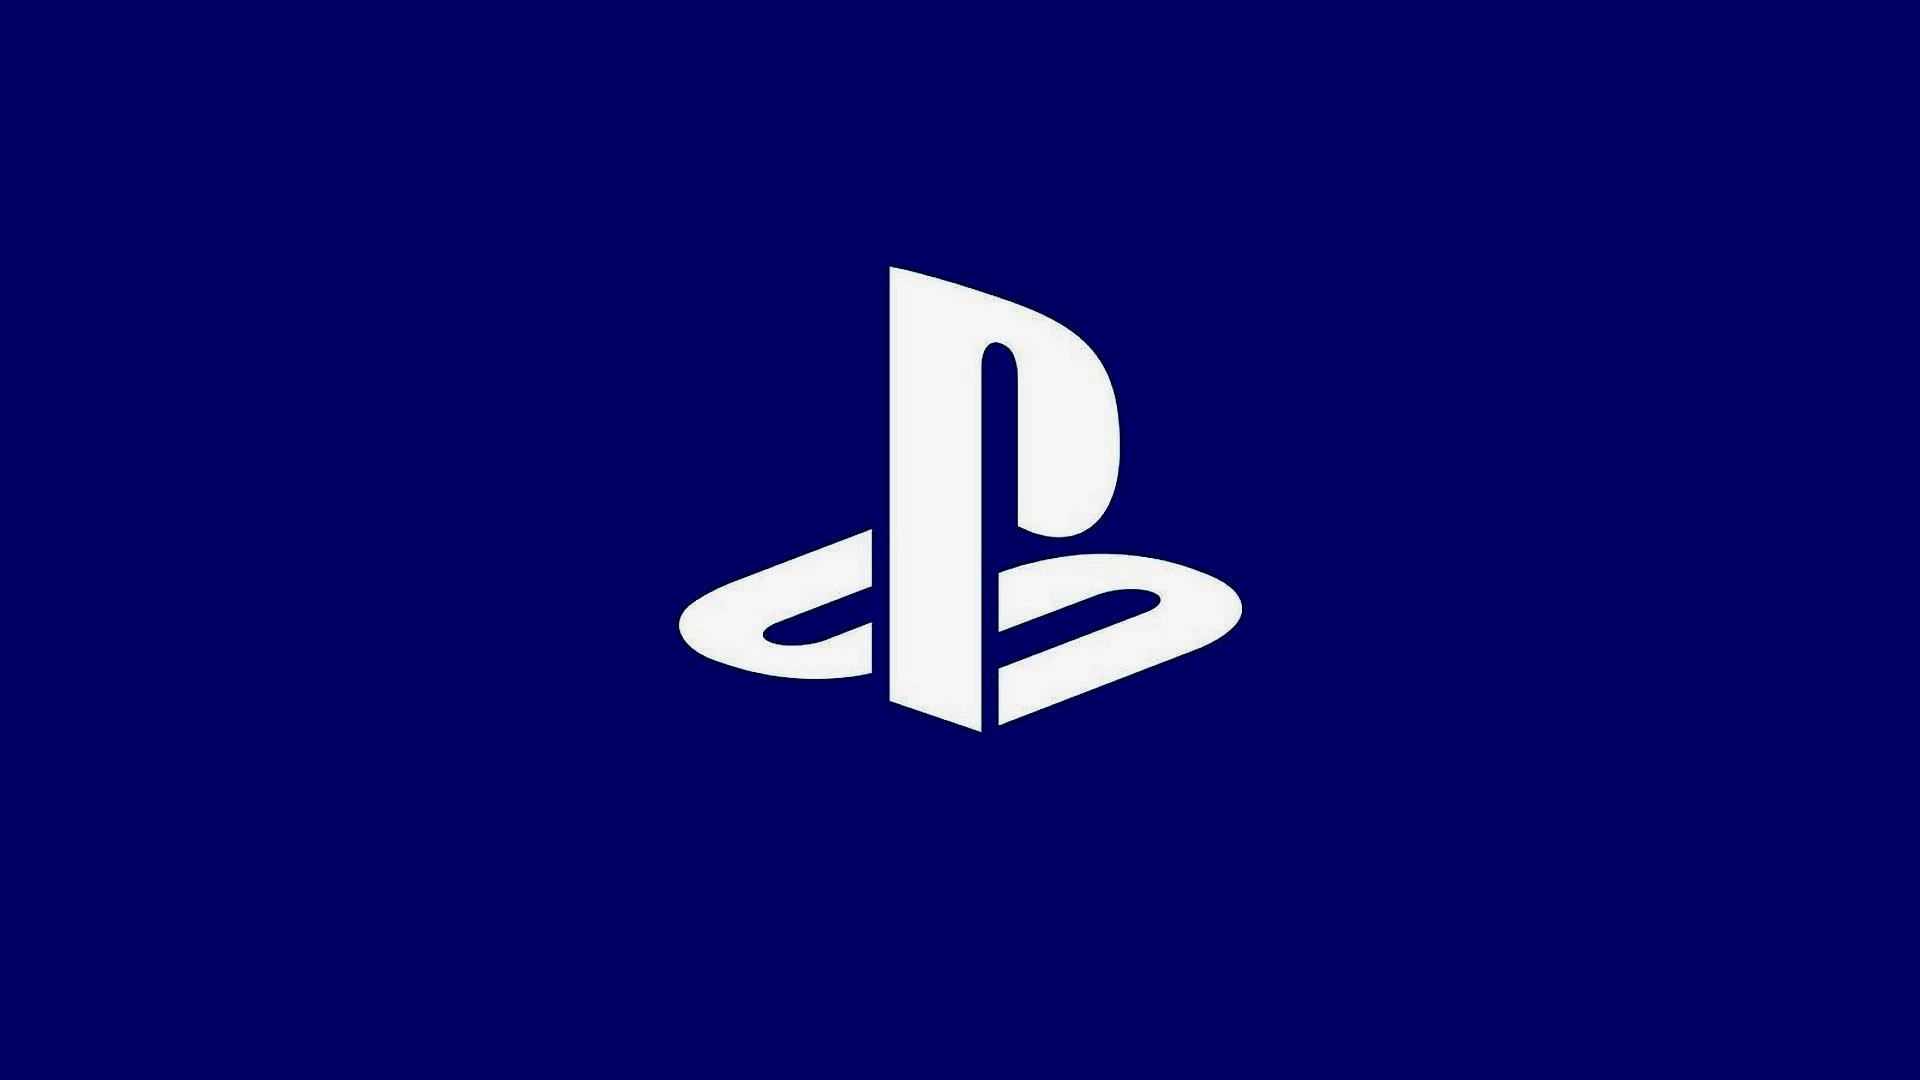 Logotip Playstation